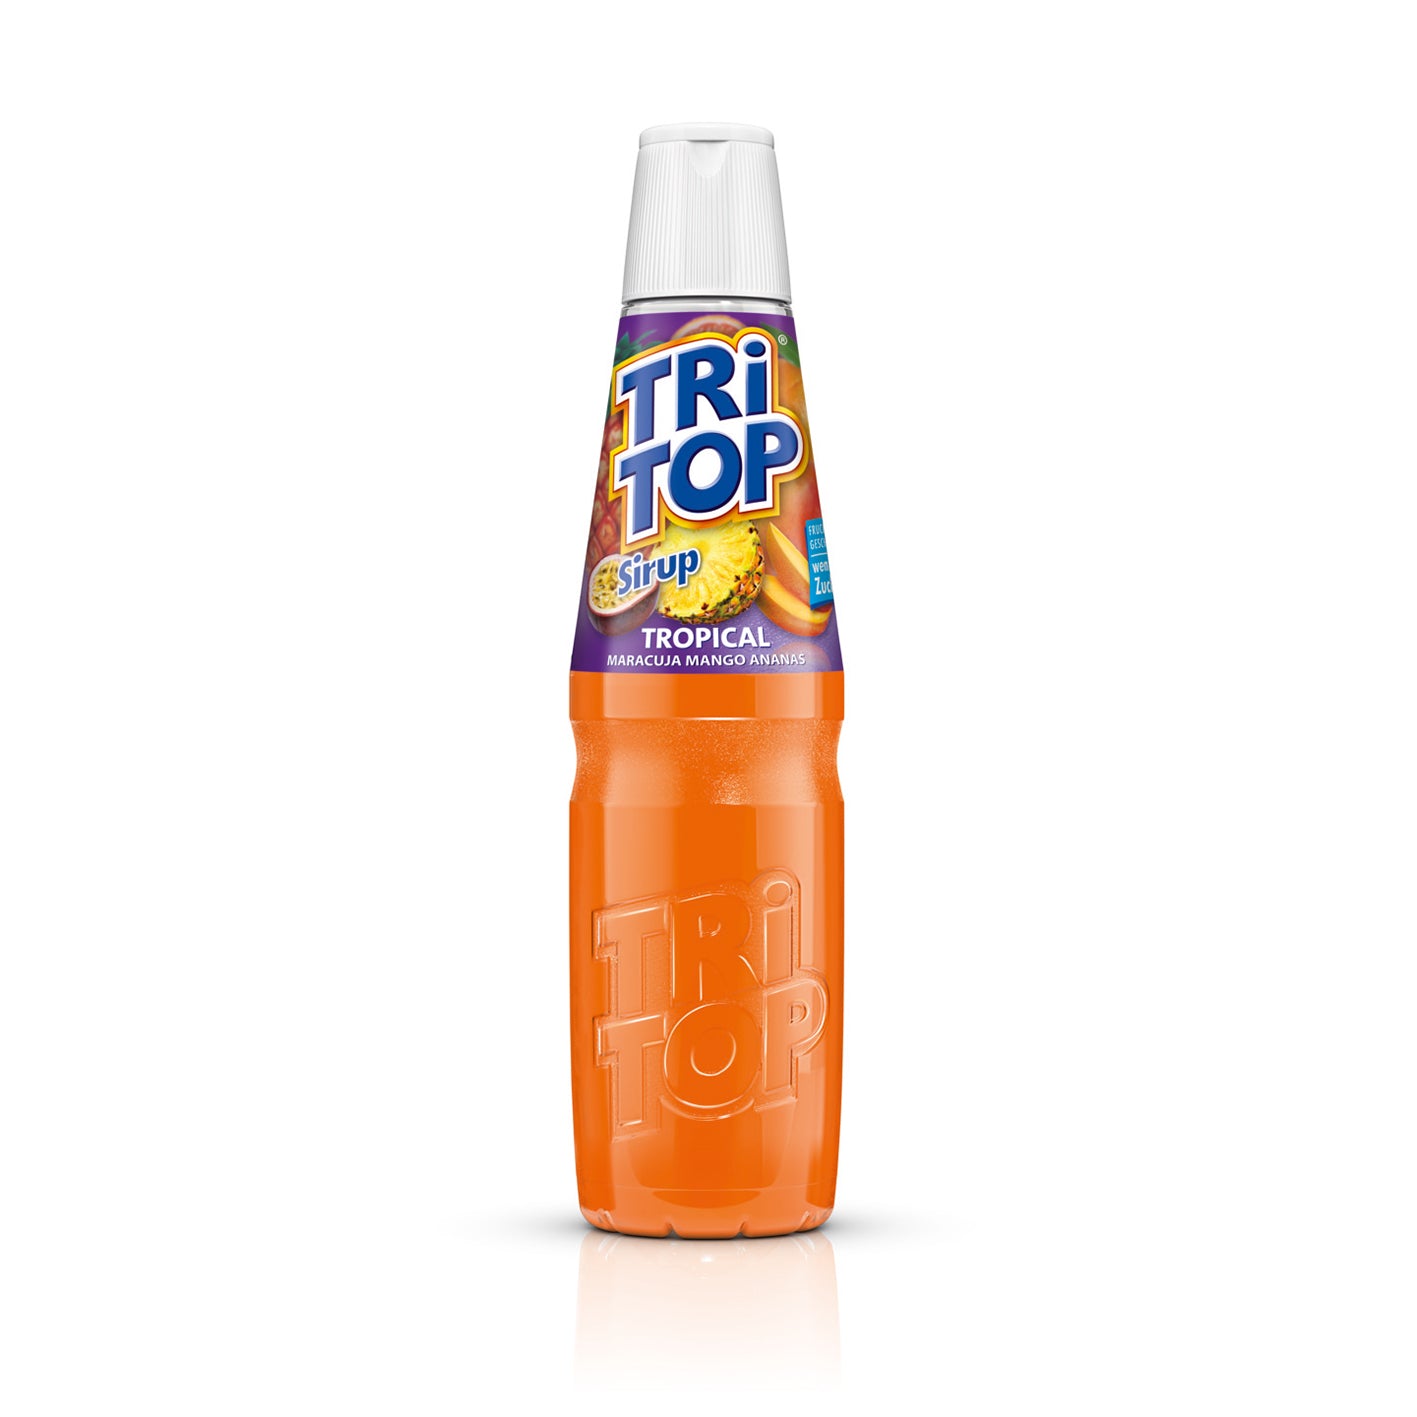 TRi TOP Sirup Tropical - 600 ml